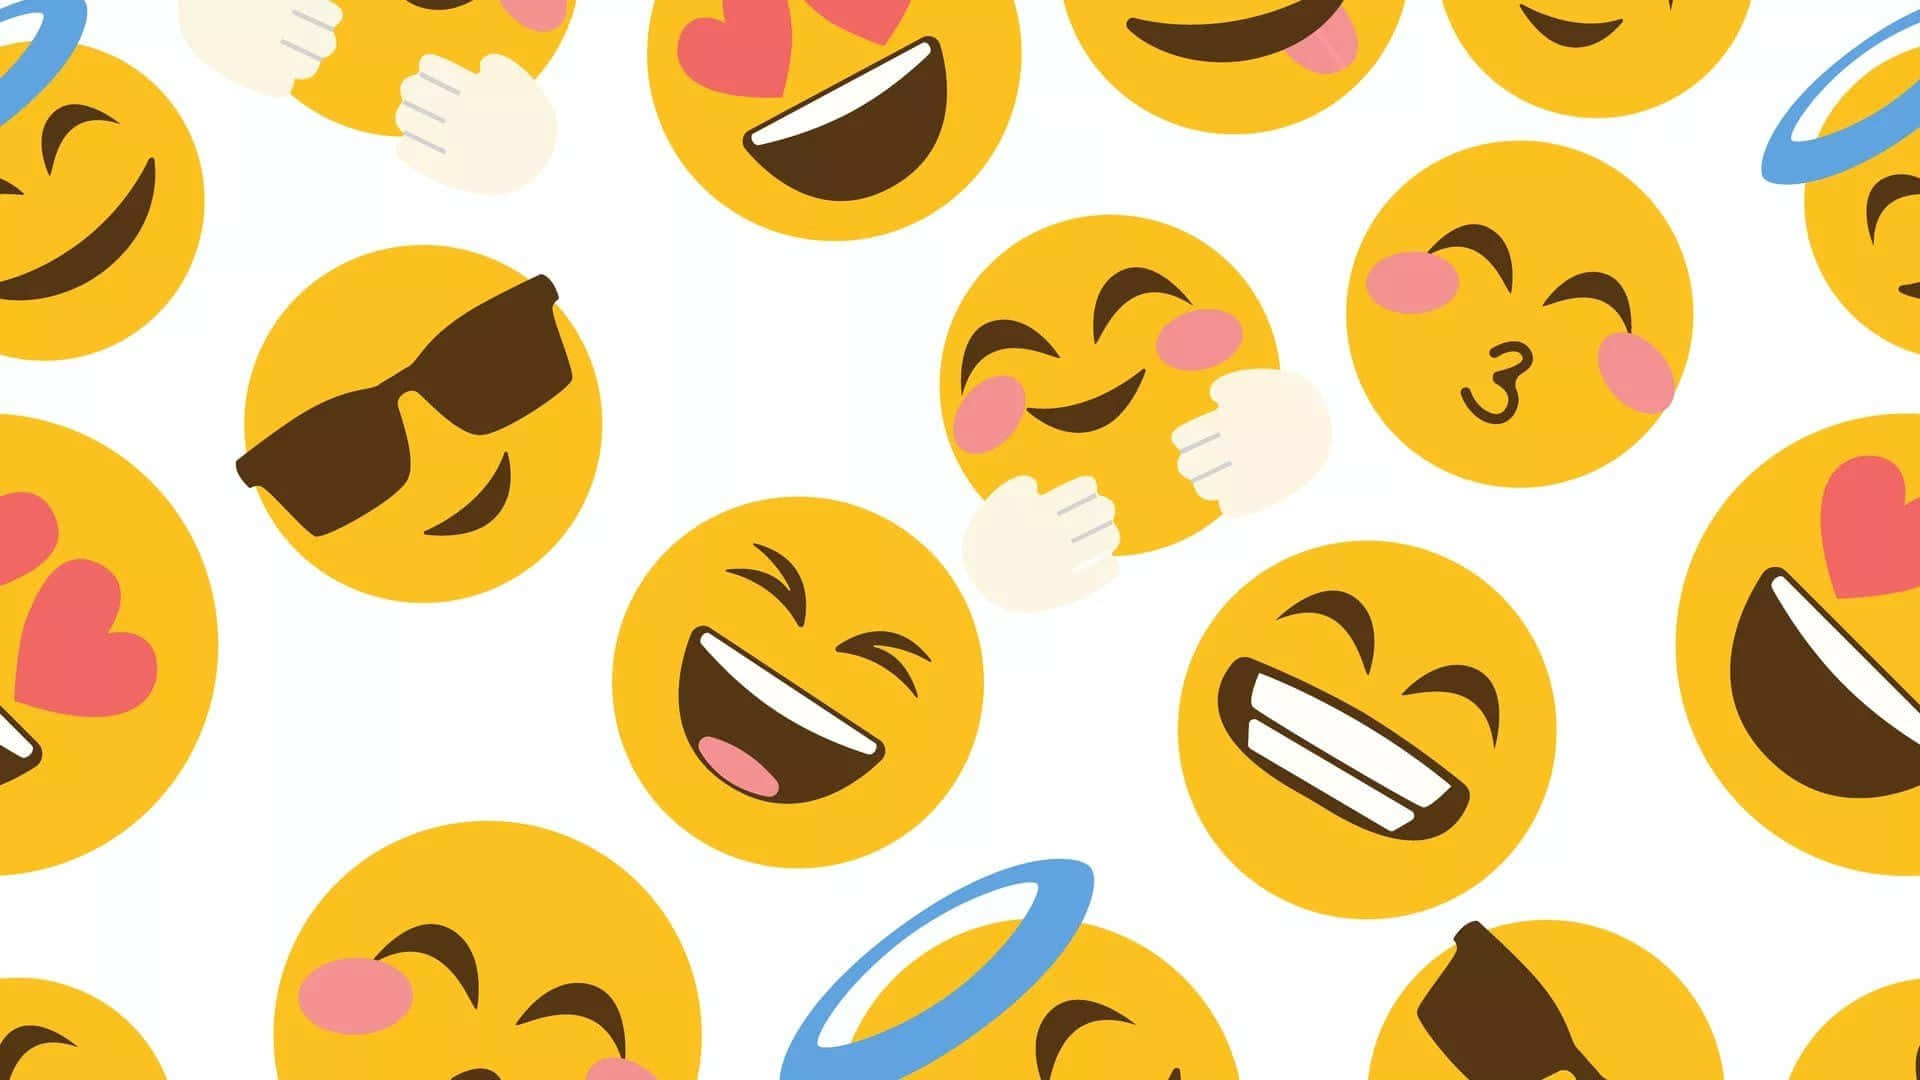 Einmuster Von Emojis Mit Unterschiedlichen Ausdrücken. Wallpaper